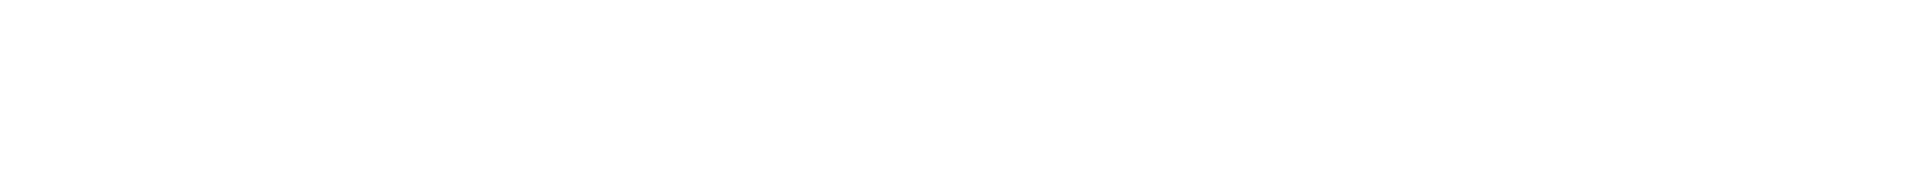 navy rotc